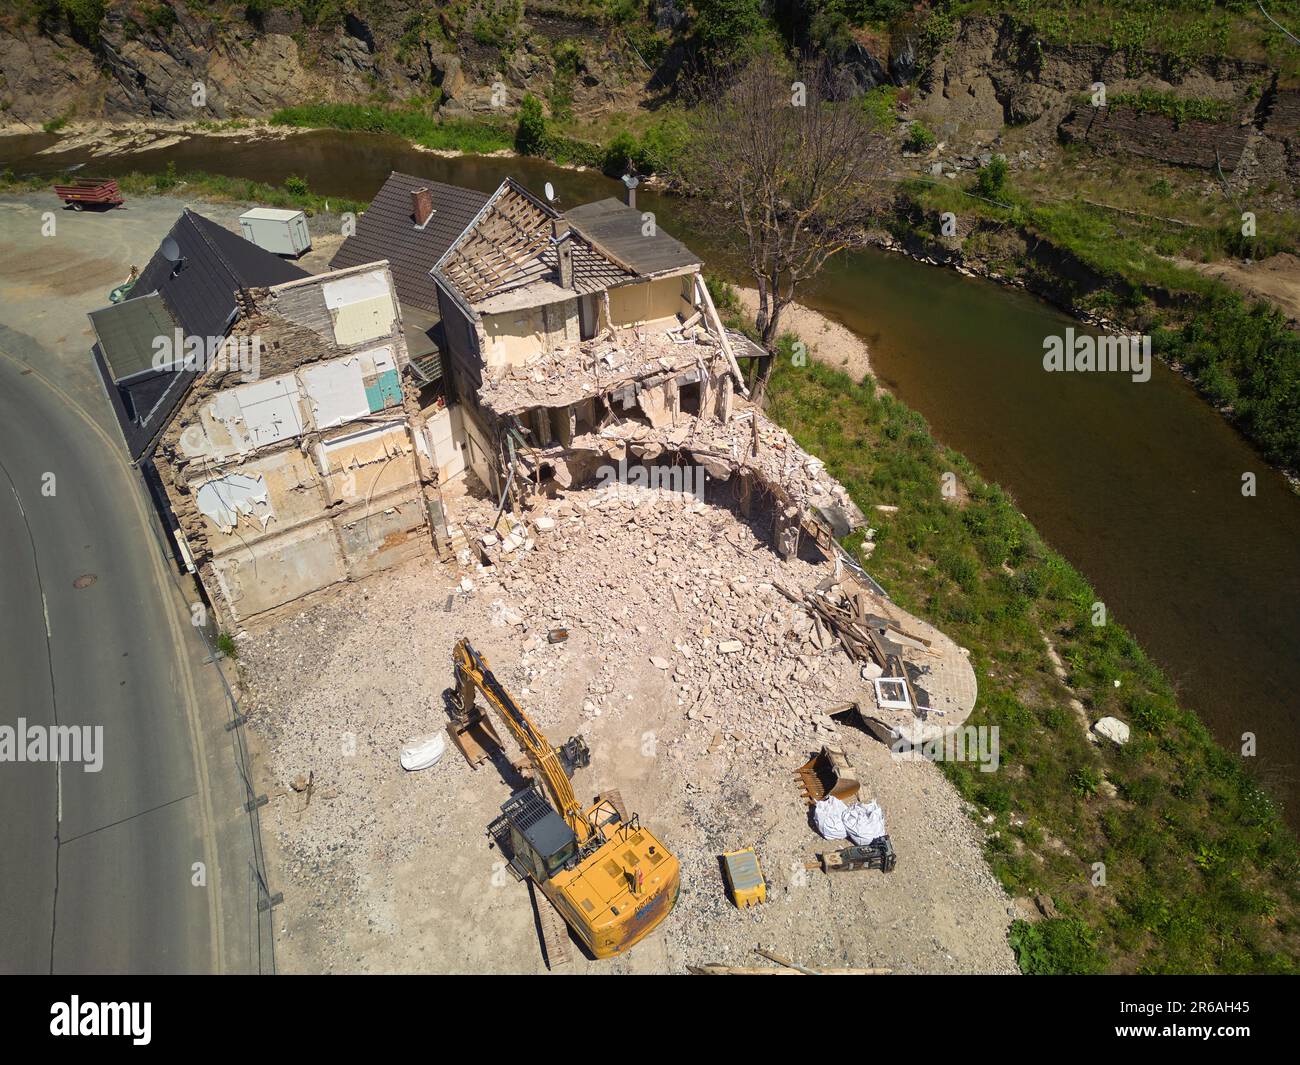 Pelle hydraulique, même près de deux ans après la catastrophe des inondations, les maisons détruites sont encore en train d'être démolies. Mayschoss, Rhénanie-Palatinat, Allemagne Banque D'Images